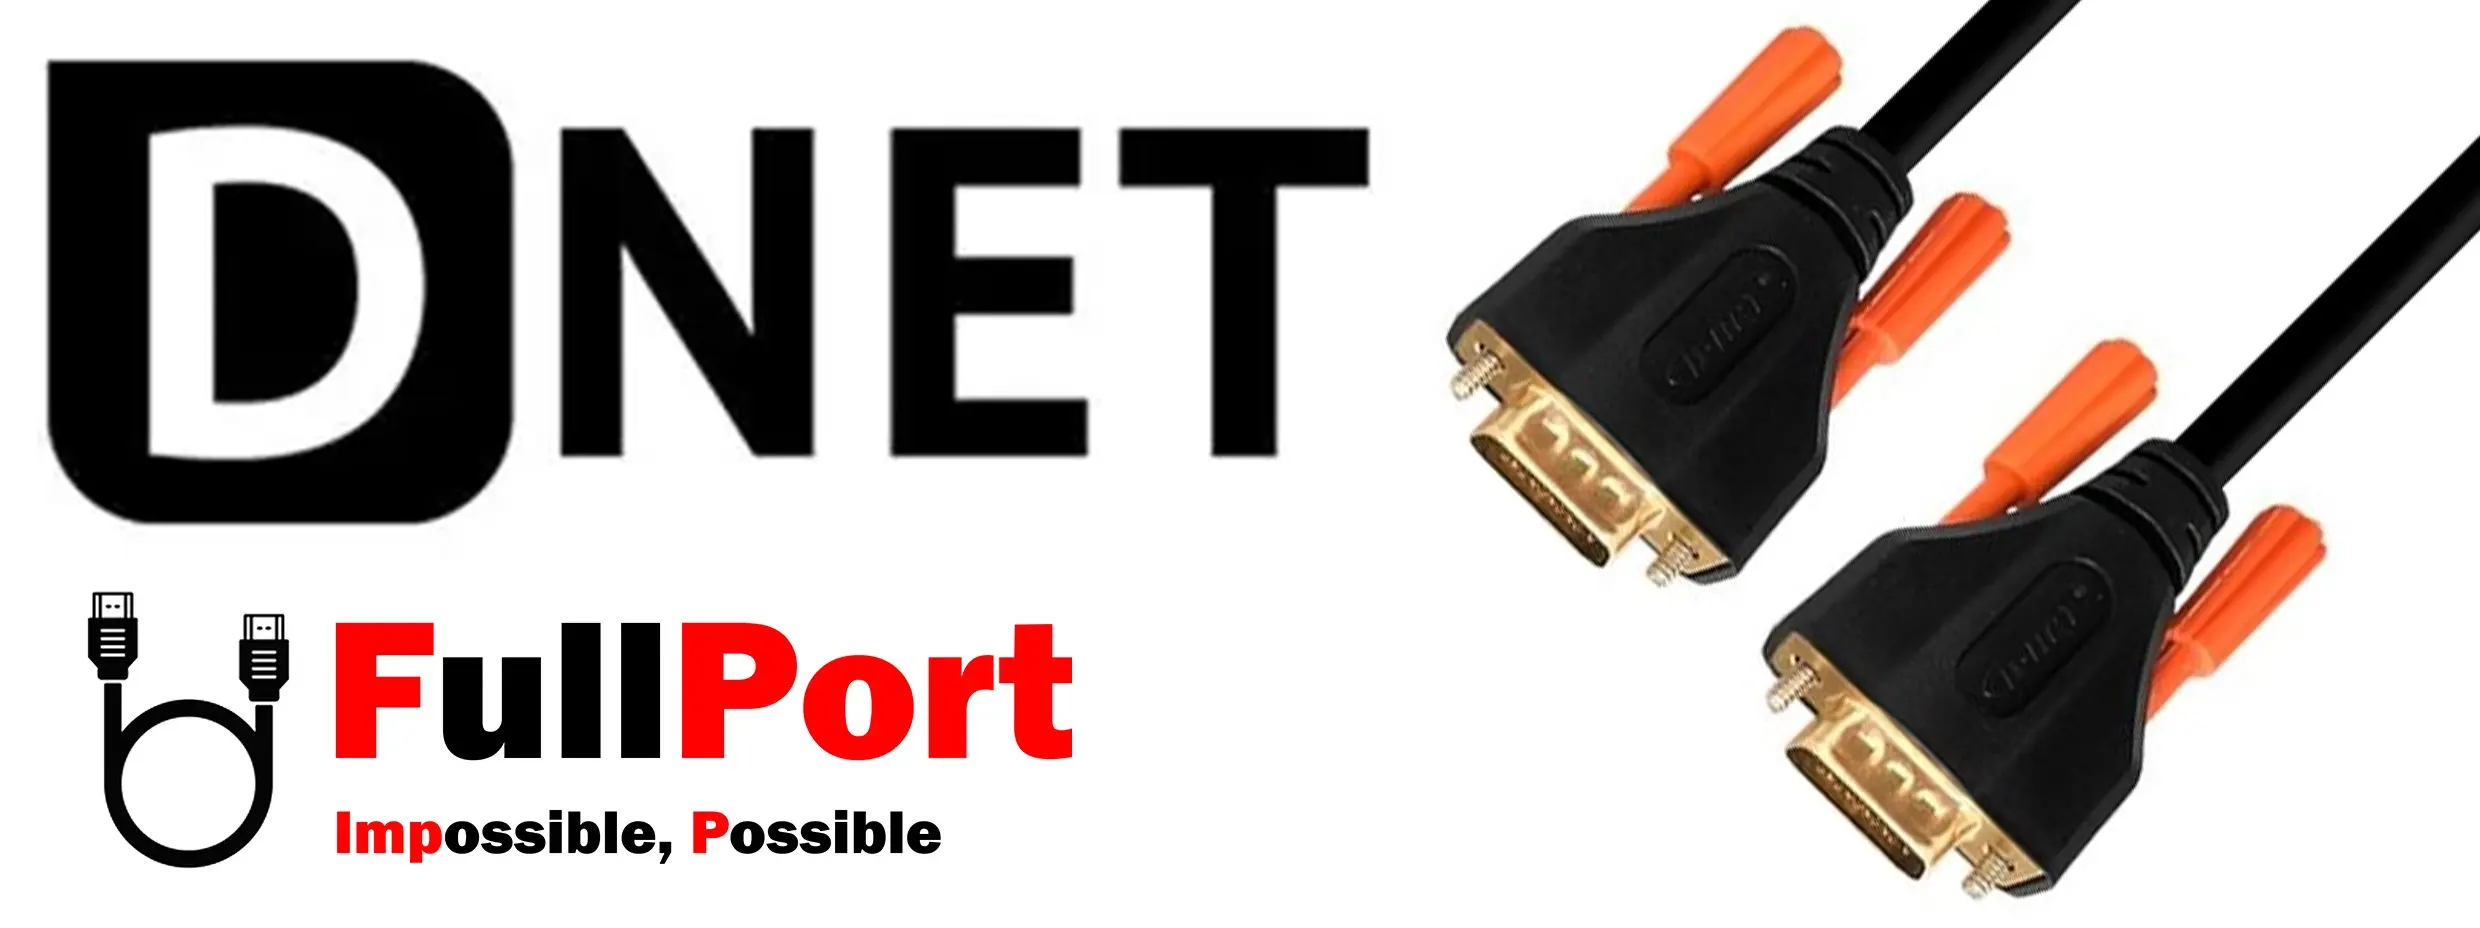 خرید اینترنتی کابل مانیتور VGA برند دی نت | D-NET با گارانتی تست و تضمین اصالت کالا از فروشگاه اینترنتی فول پورت